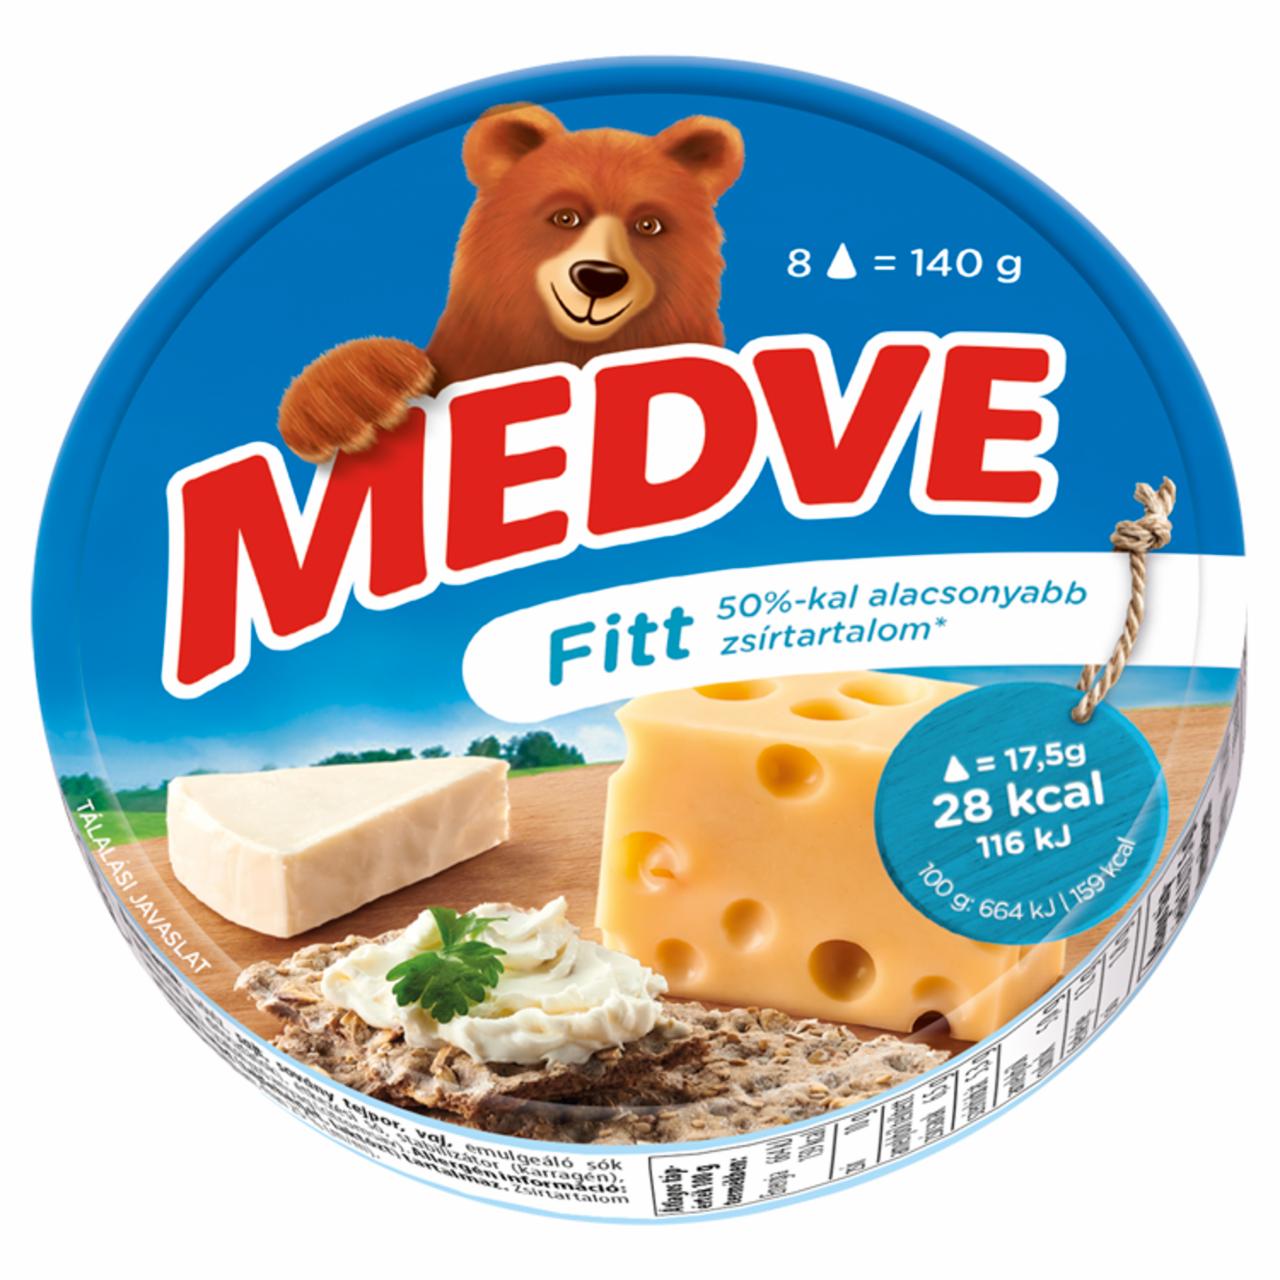 Képek - Fitt kenhető, félzsíros ömlesztett sajt Medve